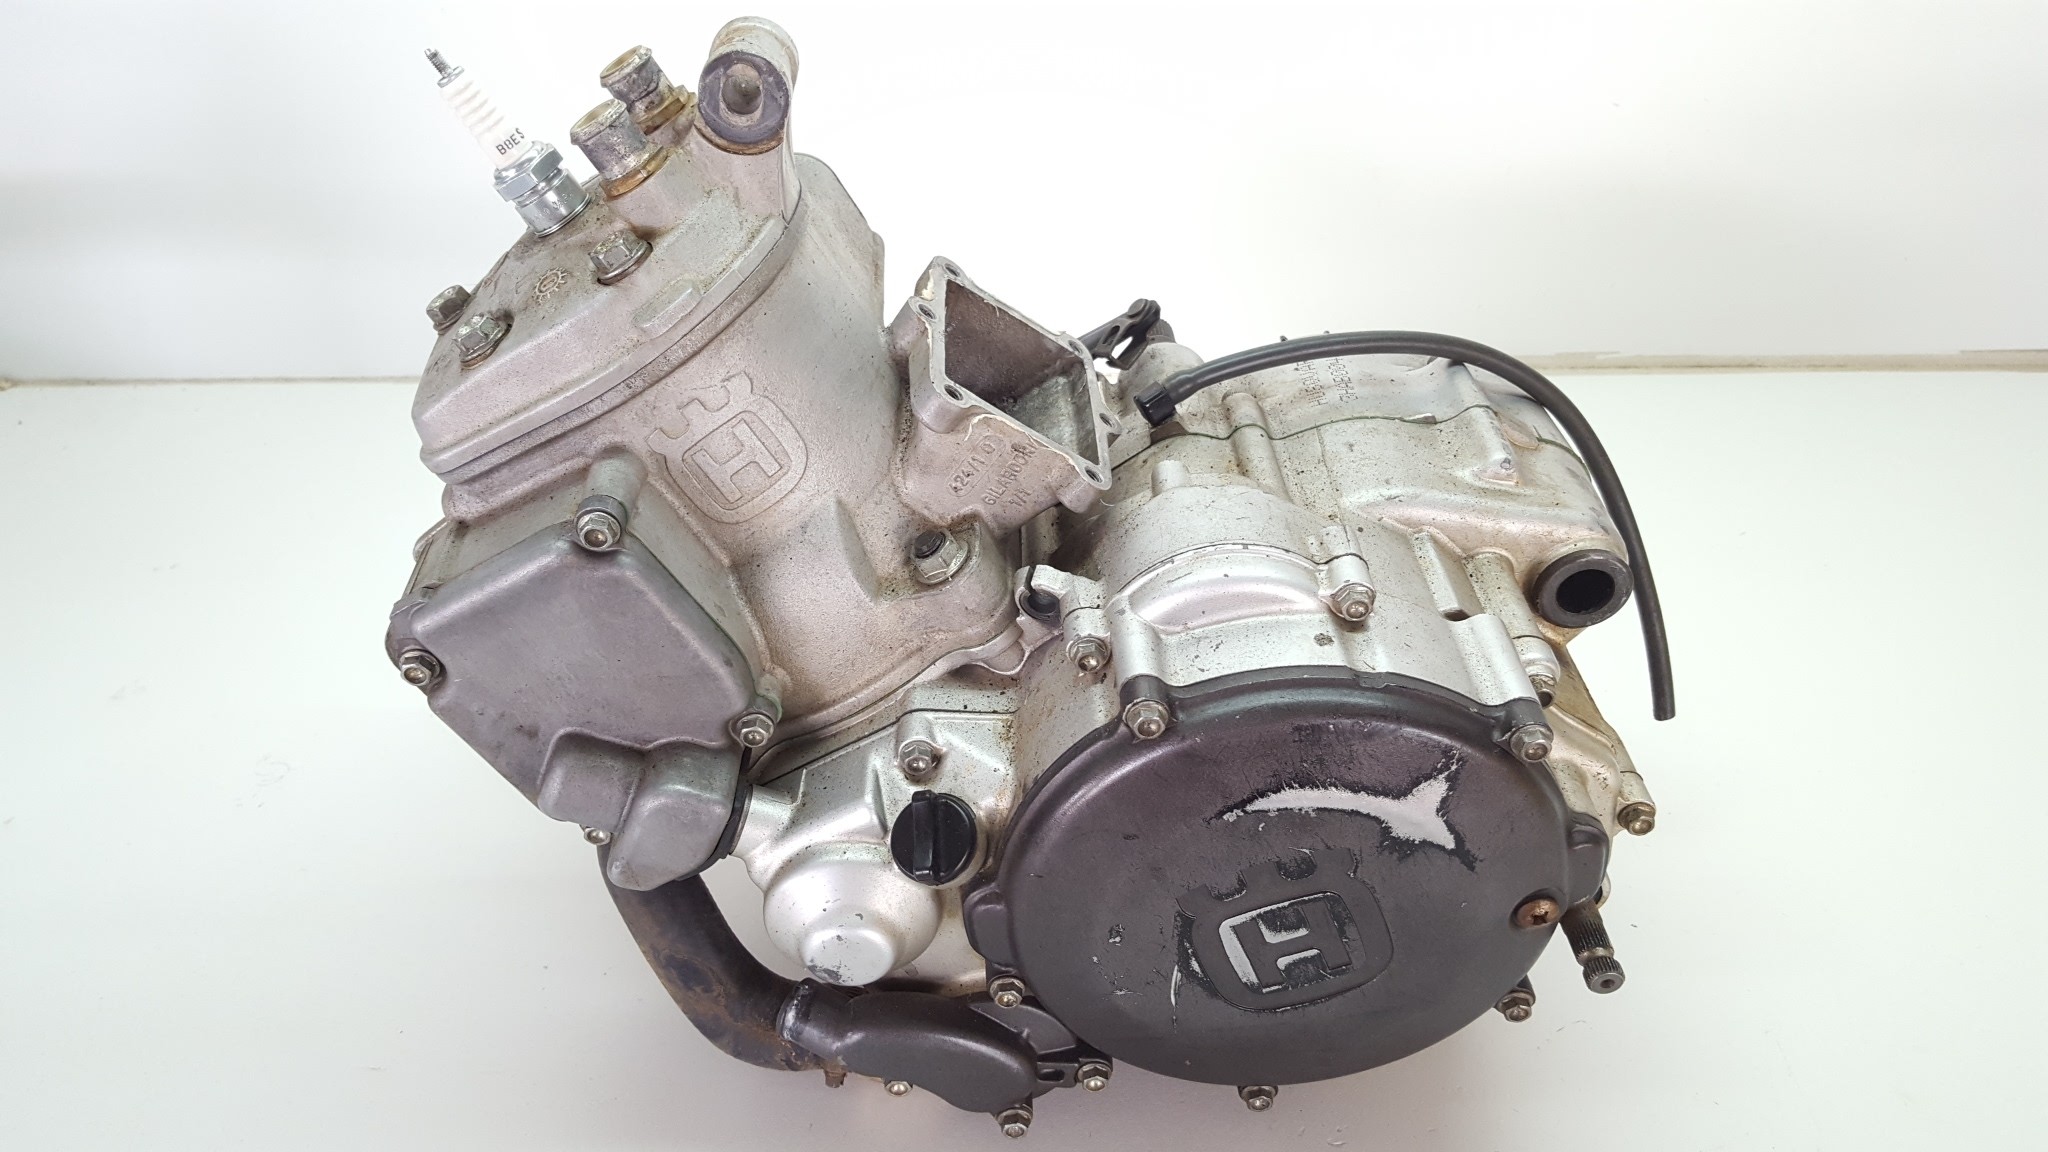 Exchange Engine Husqvarna WR250 WR 250 300 Complete Motor Crankshaft Cases Cylinder Head Bottom End 2009-2012